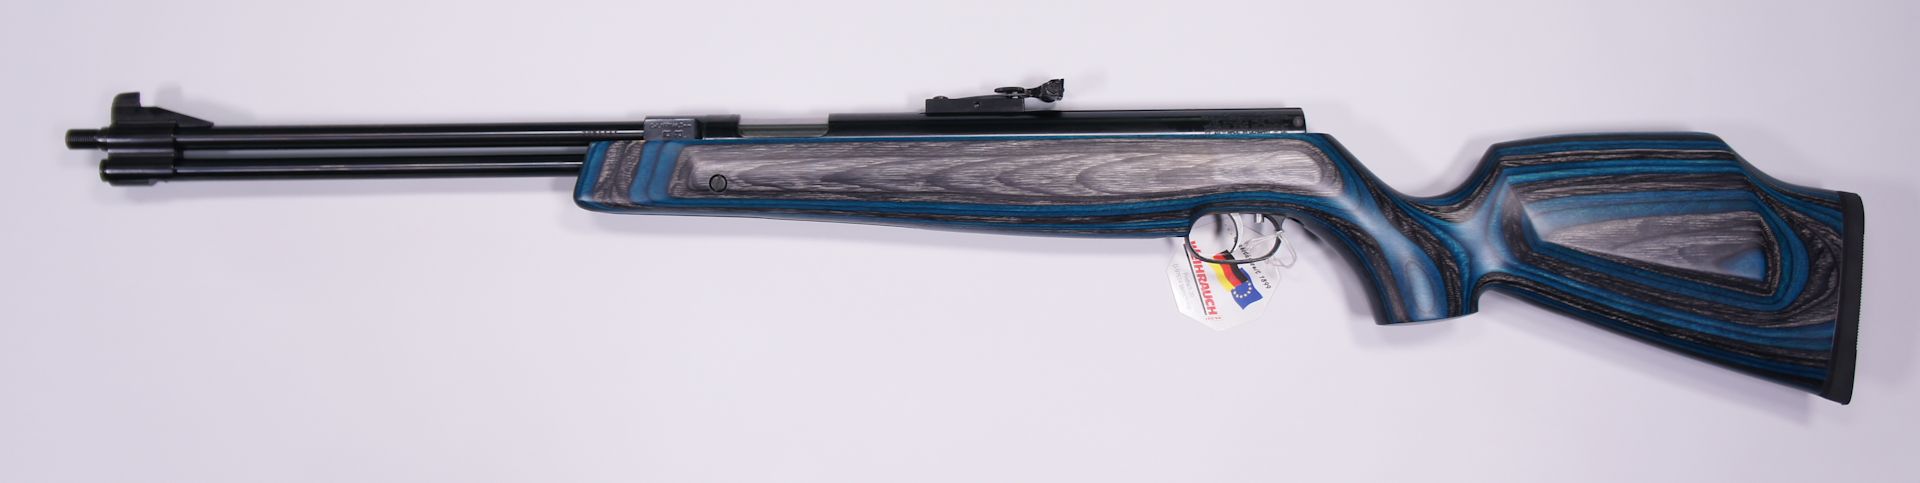 HW 77K-97, Kaliber 5,5 mm, F, mit Schalldmpfer und blauem Schichtholzschaft